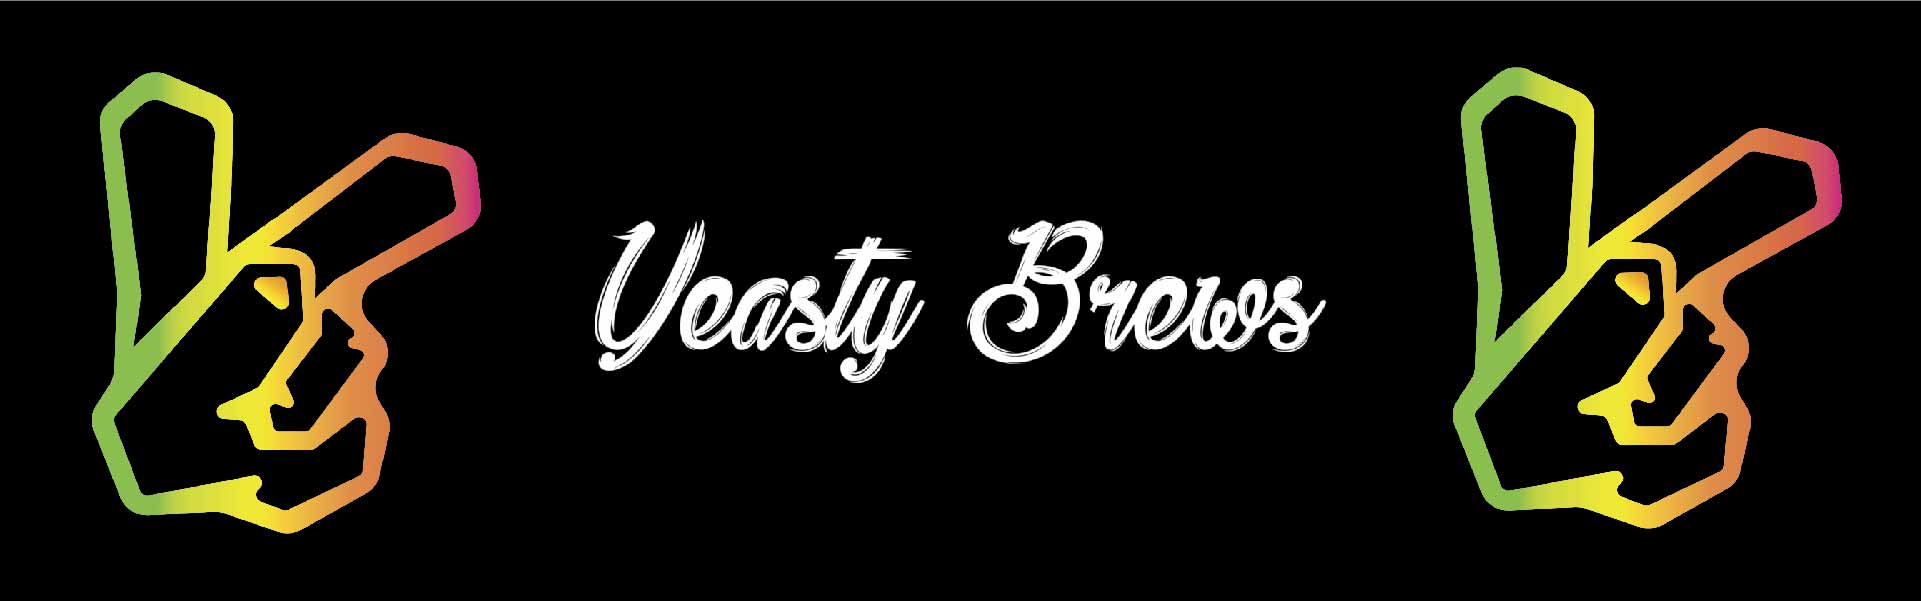 Yeasty Brews